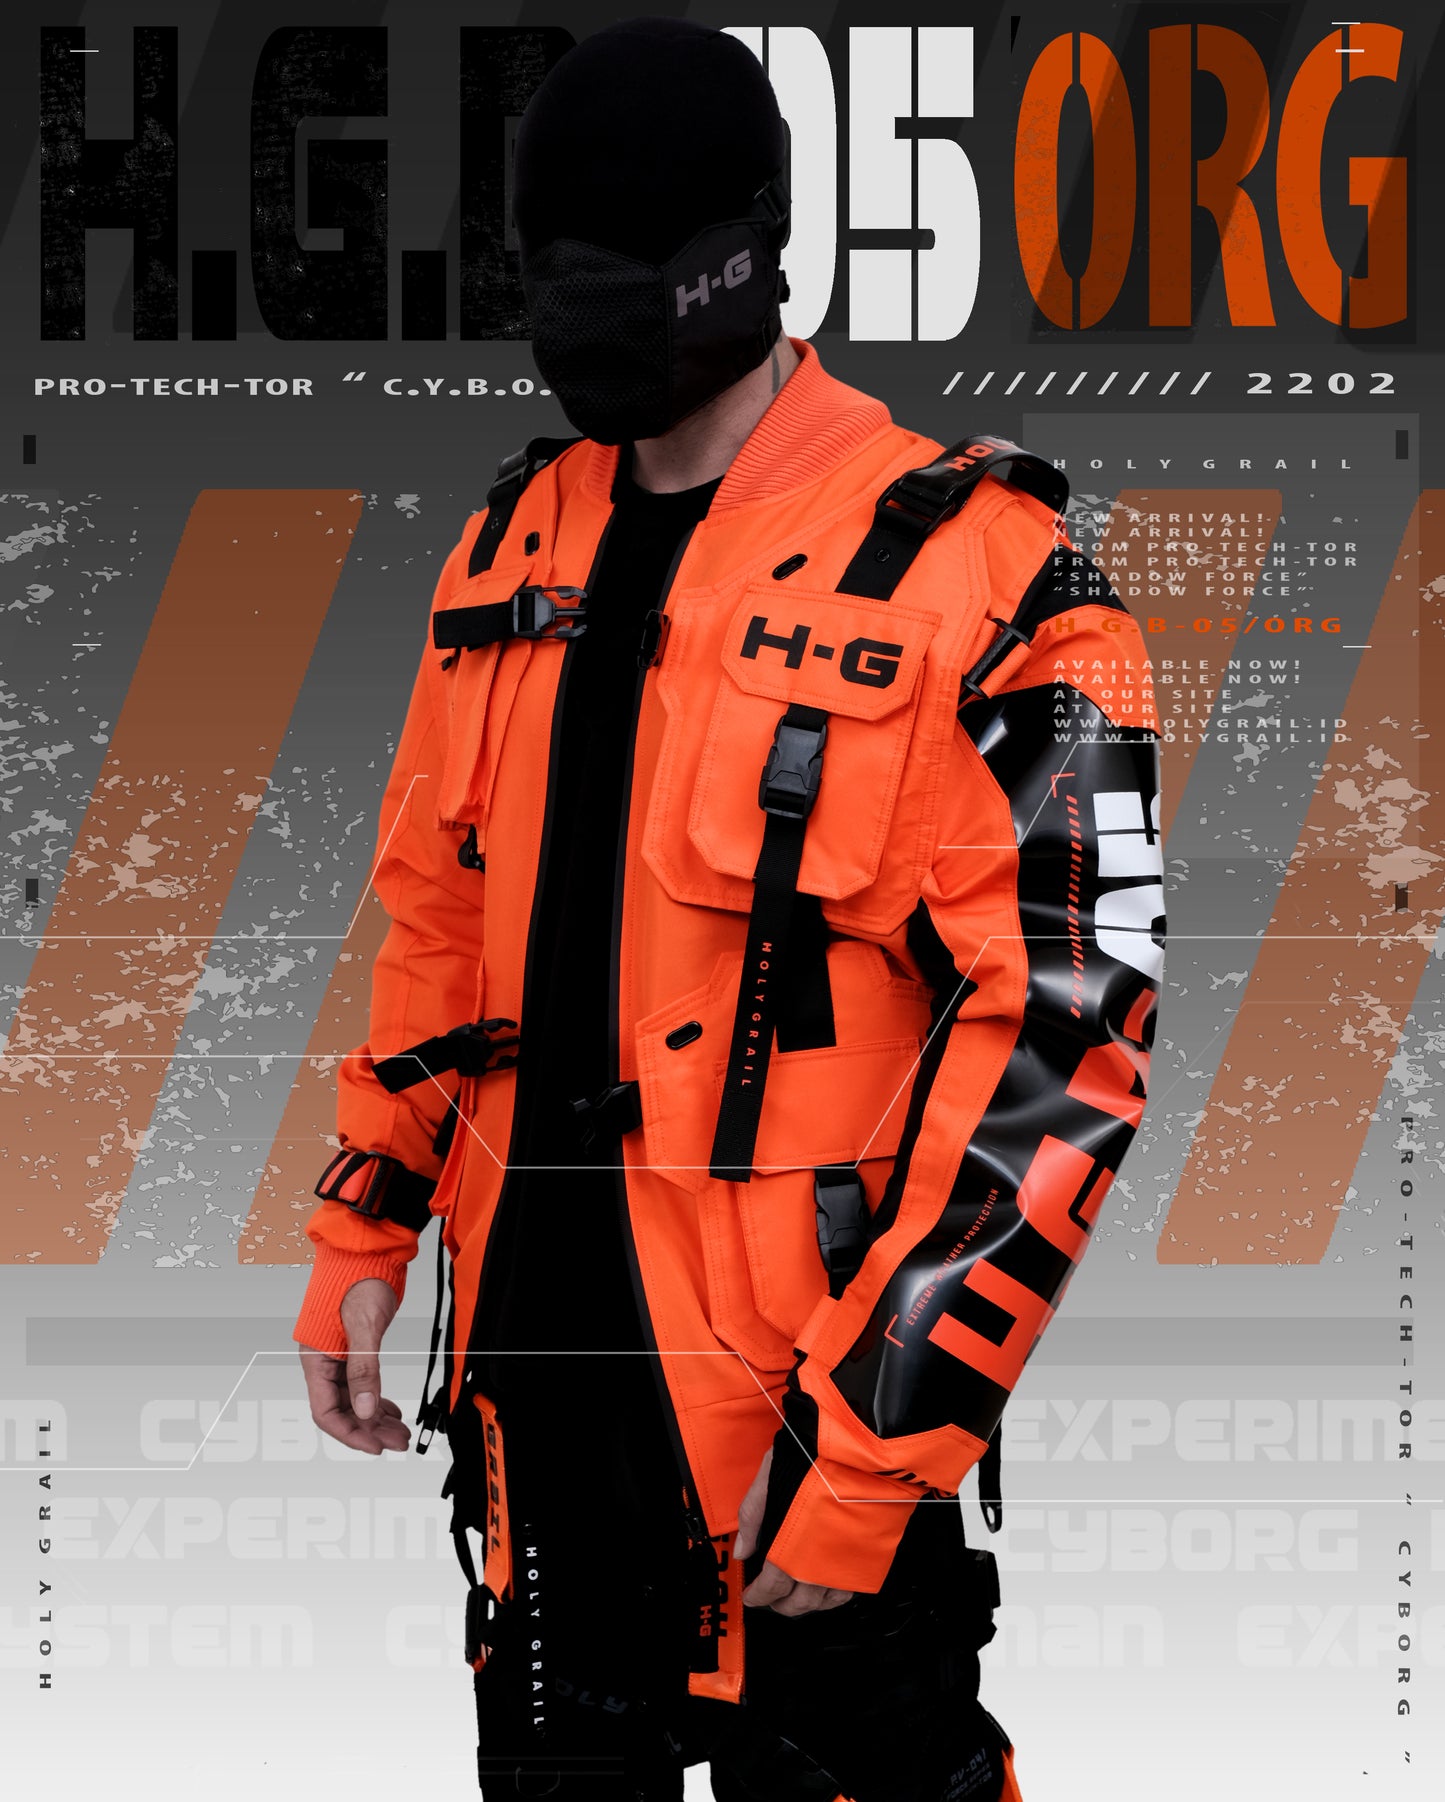 H.G.B-O5/ORG